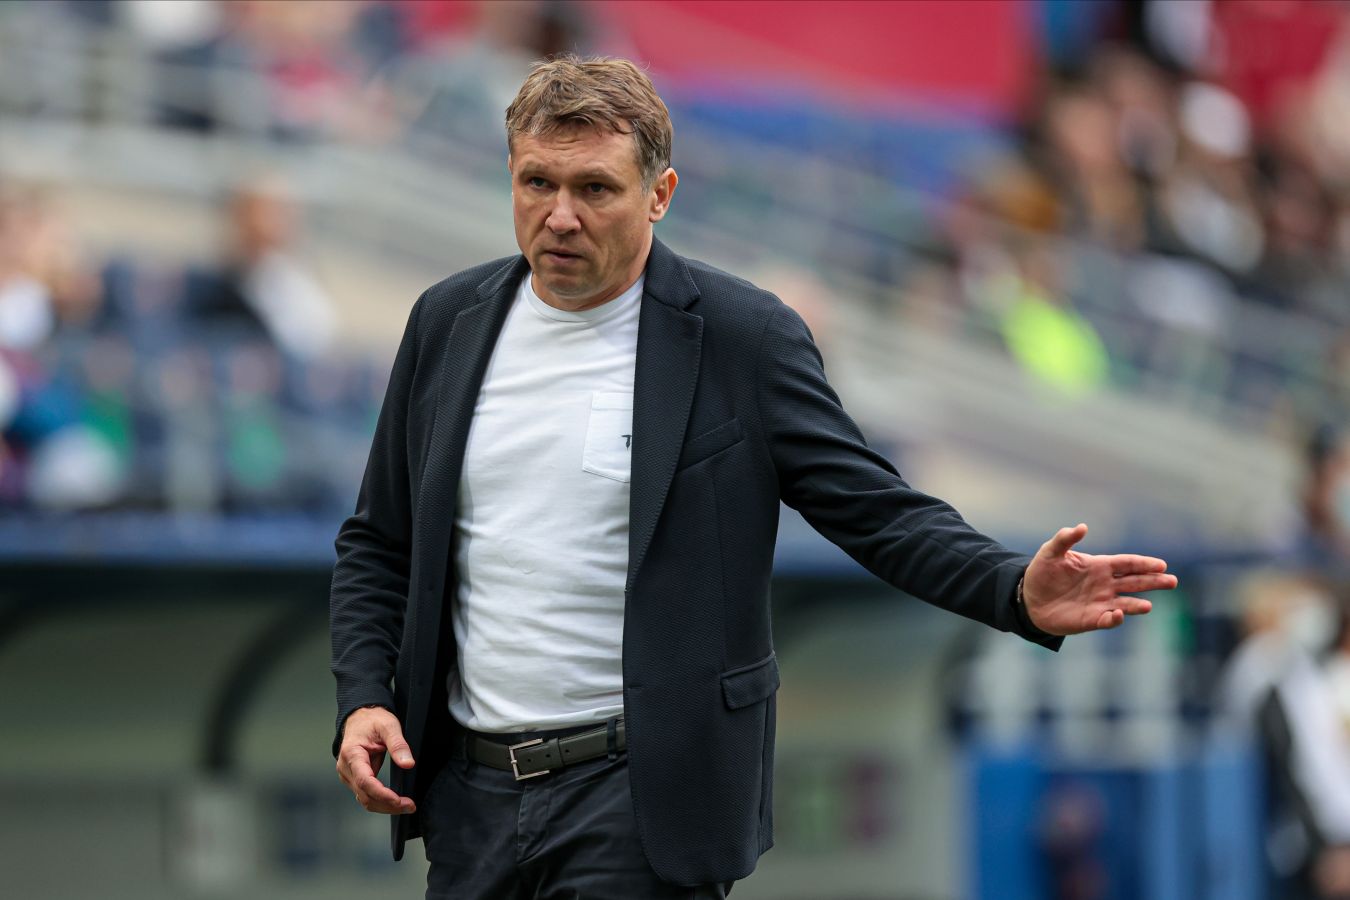 Андрей Талалаев рассказал о проблемах «Химок» с составом — клуб не может заявлять игроков